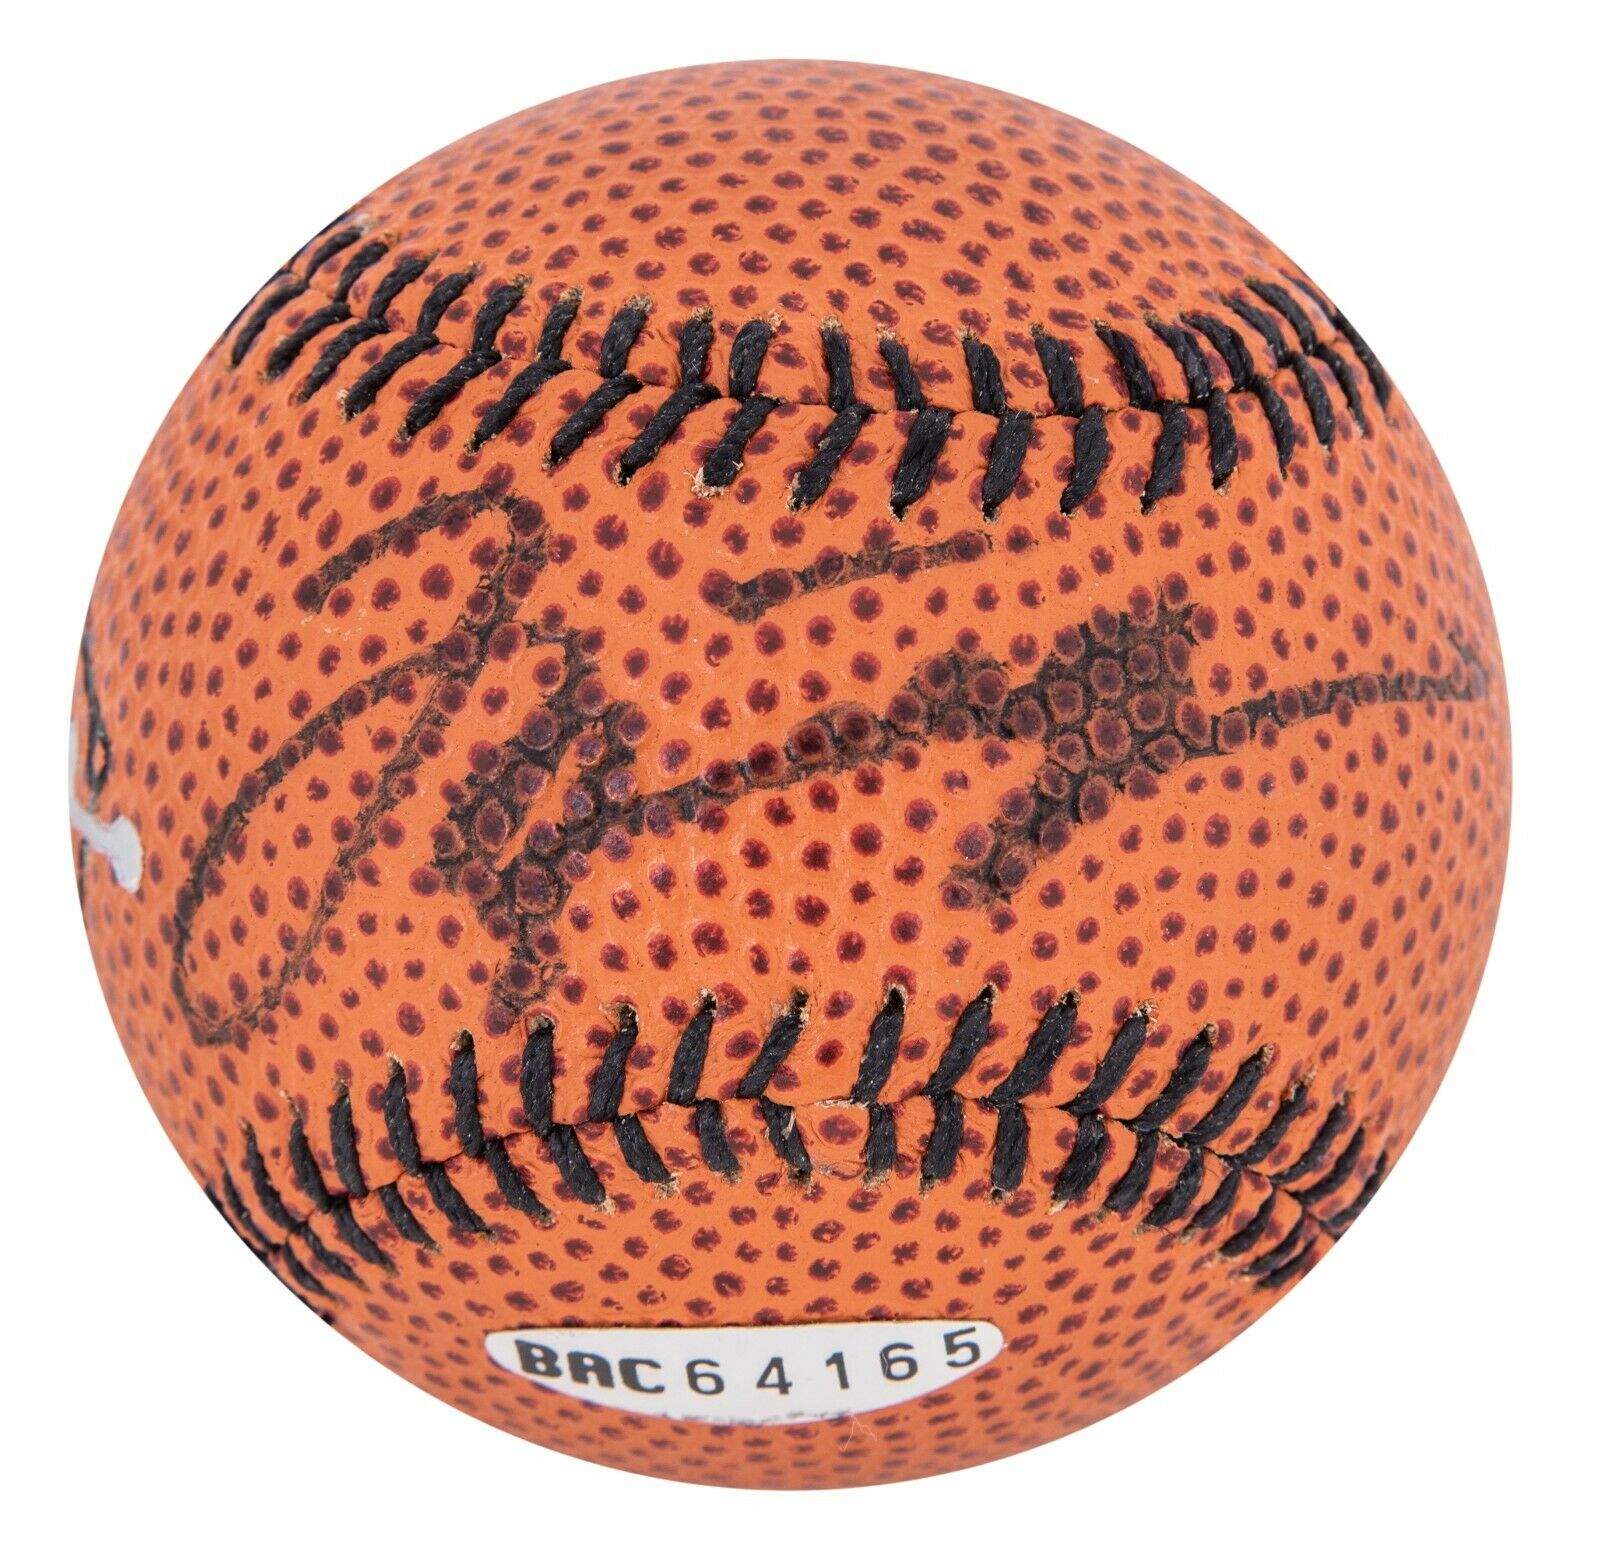 Michael Jordan Signed Nike Basketball Style Baseball UDA Upper Deck COA